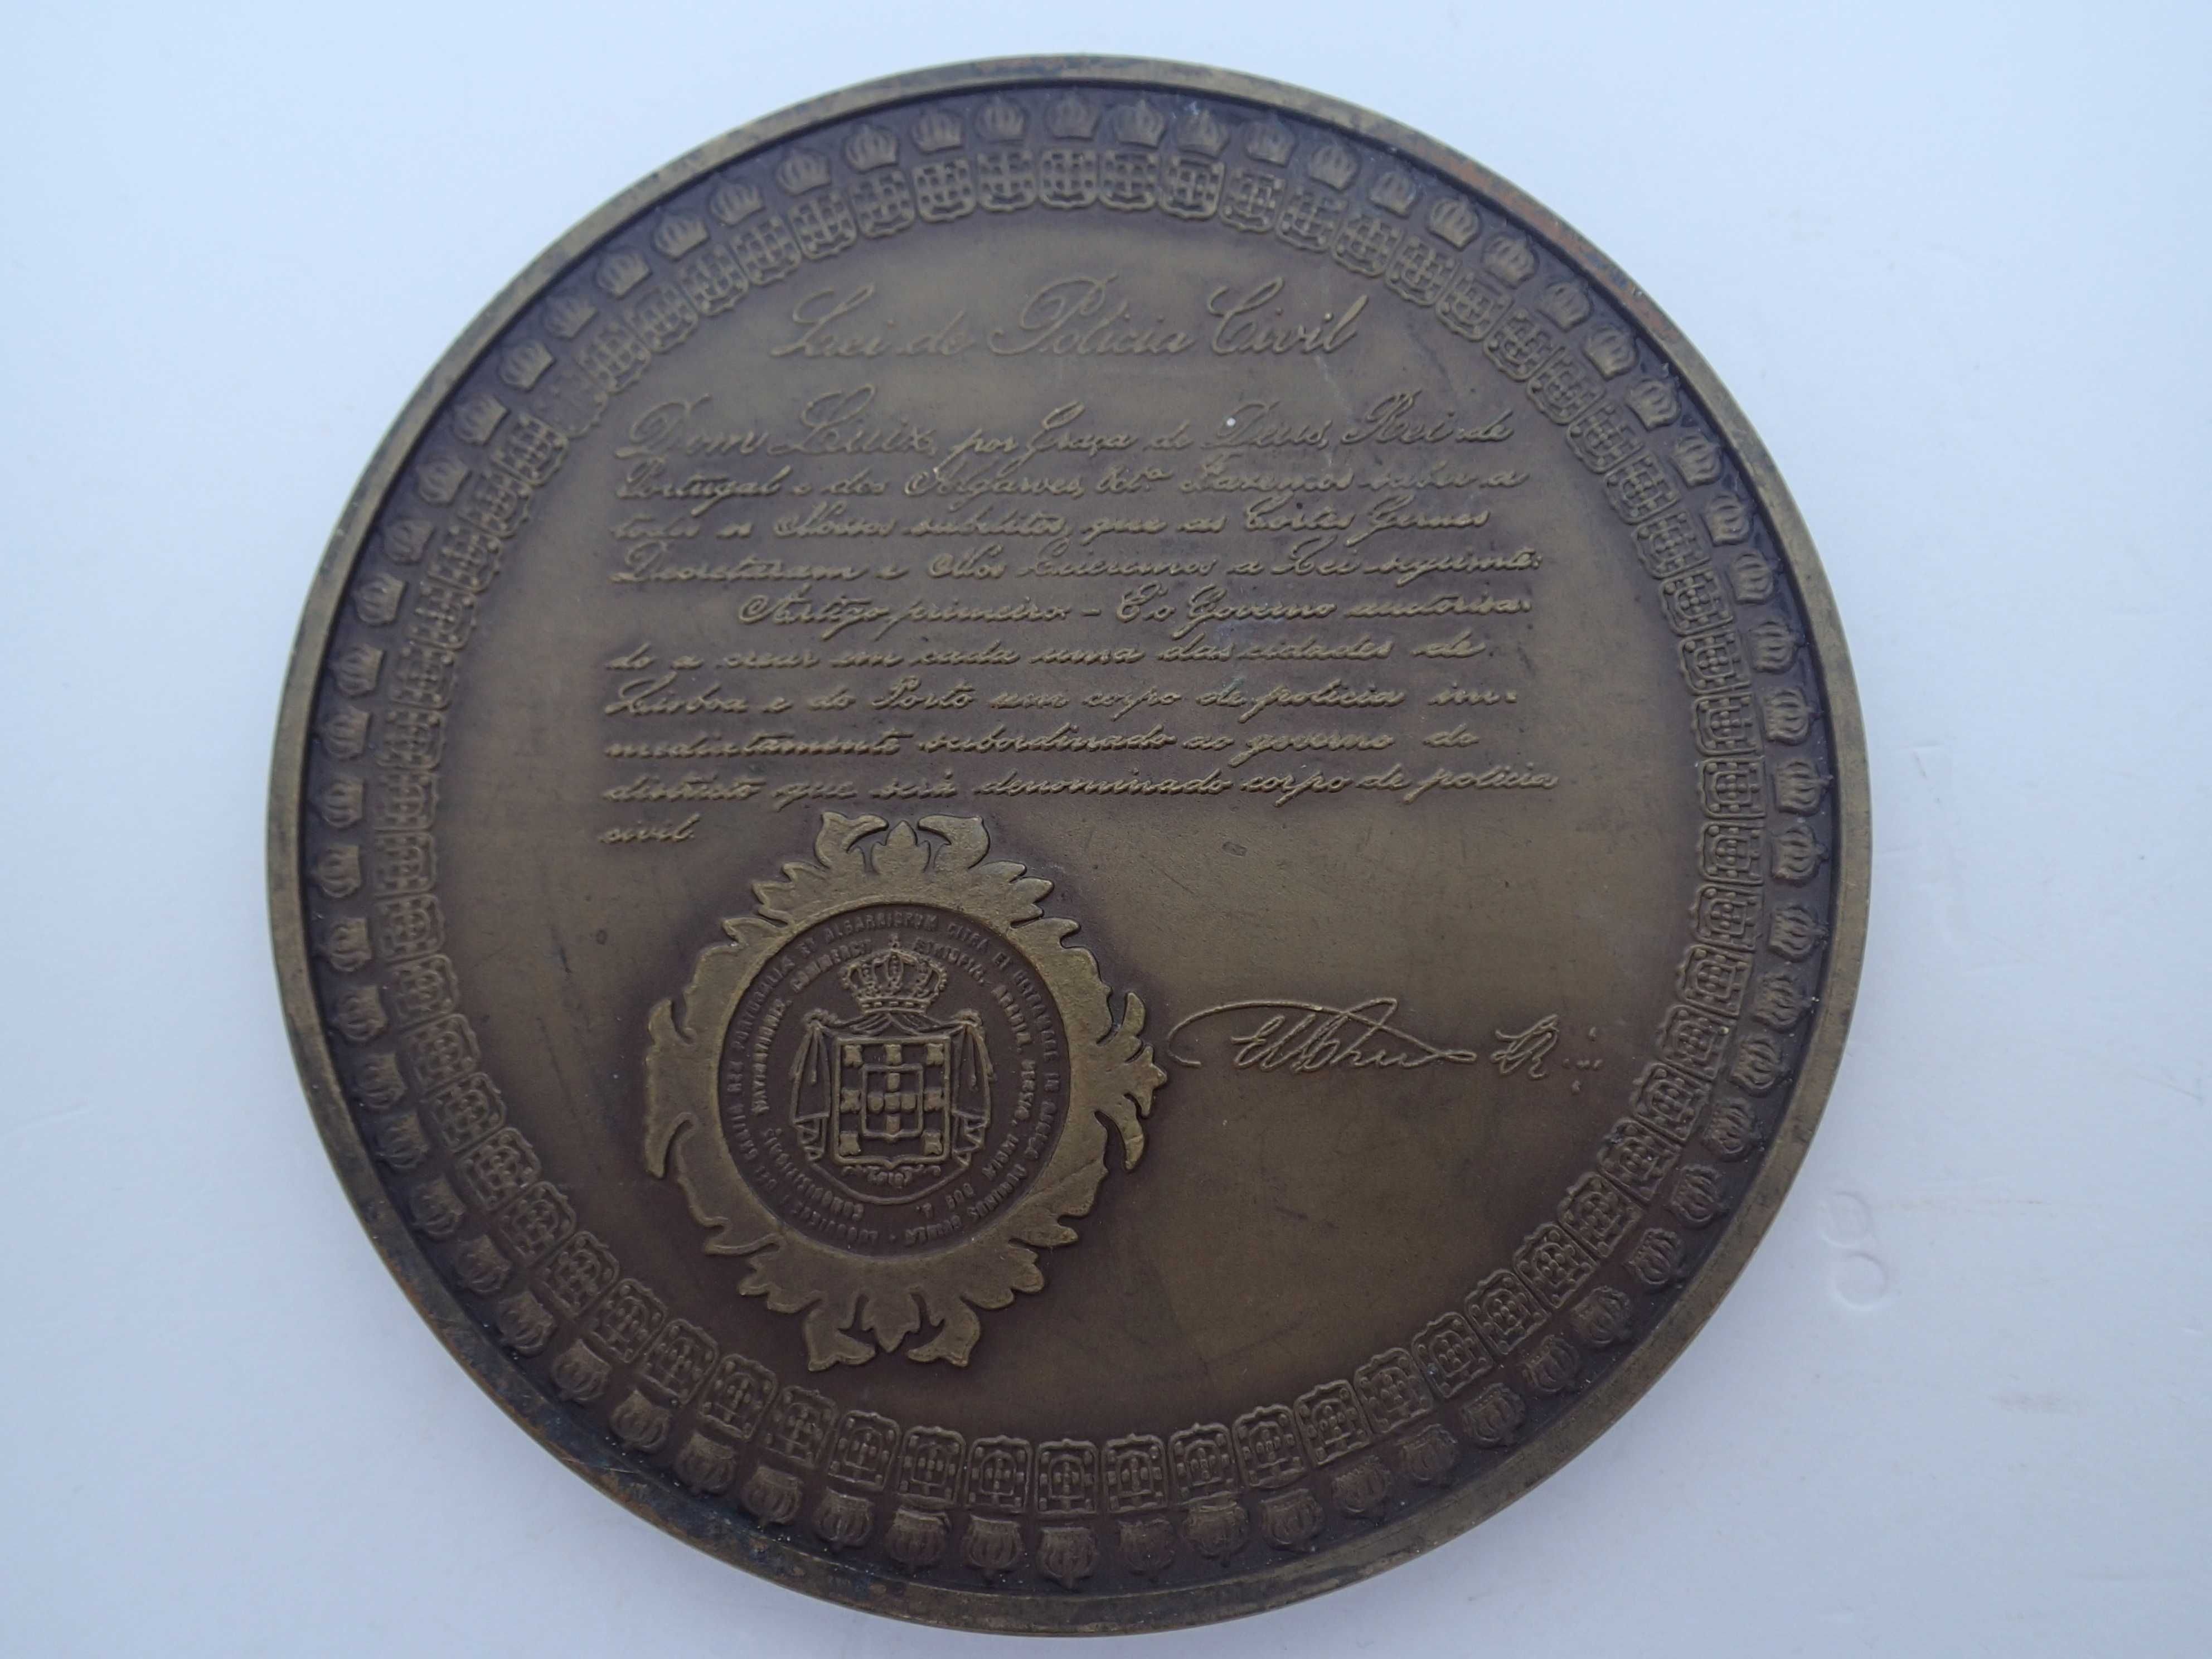 Medalha em bronze da PSP